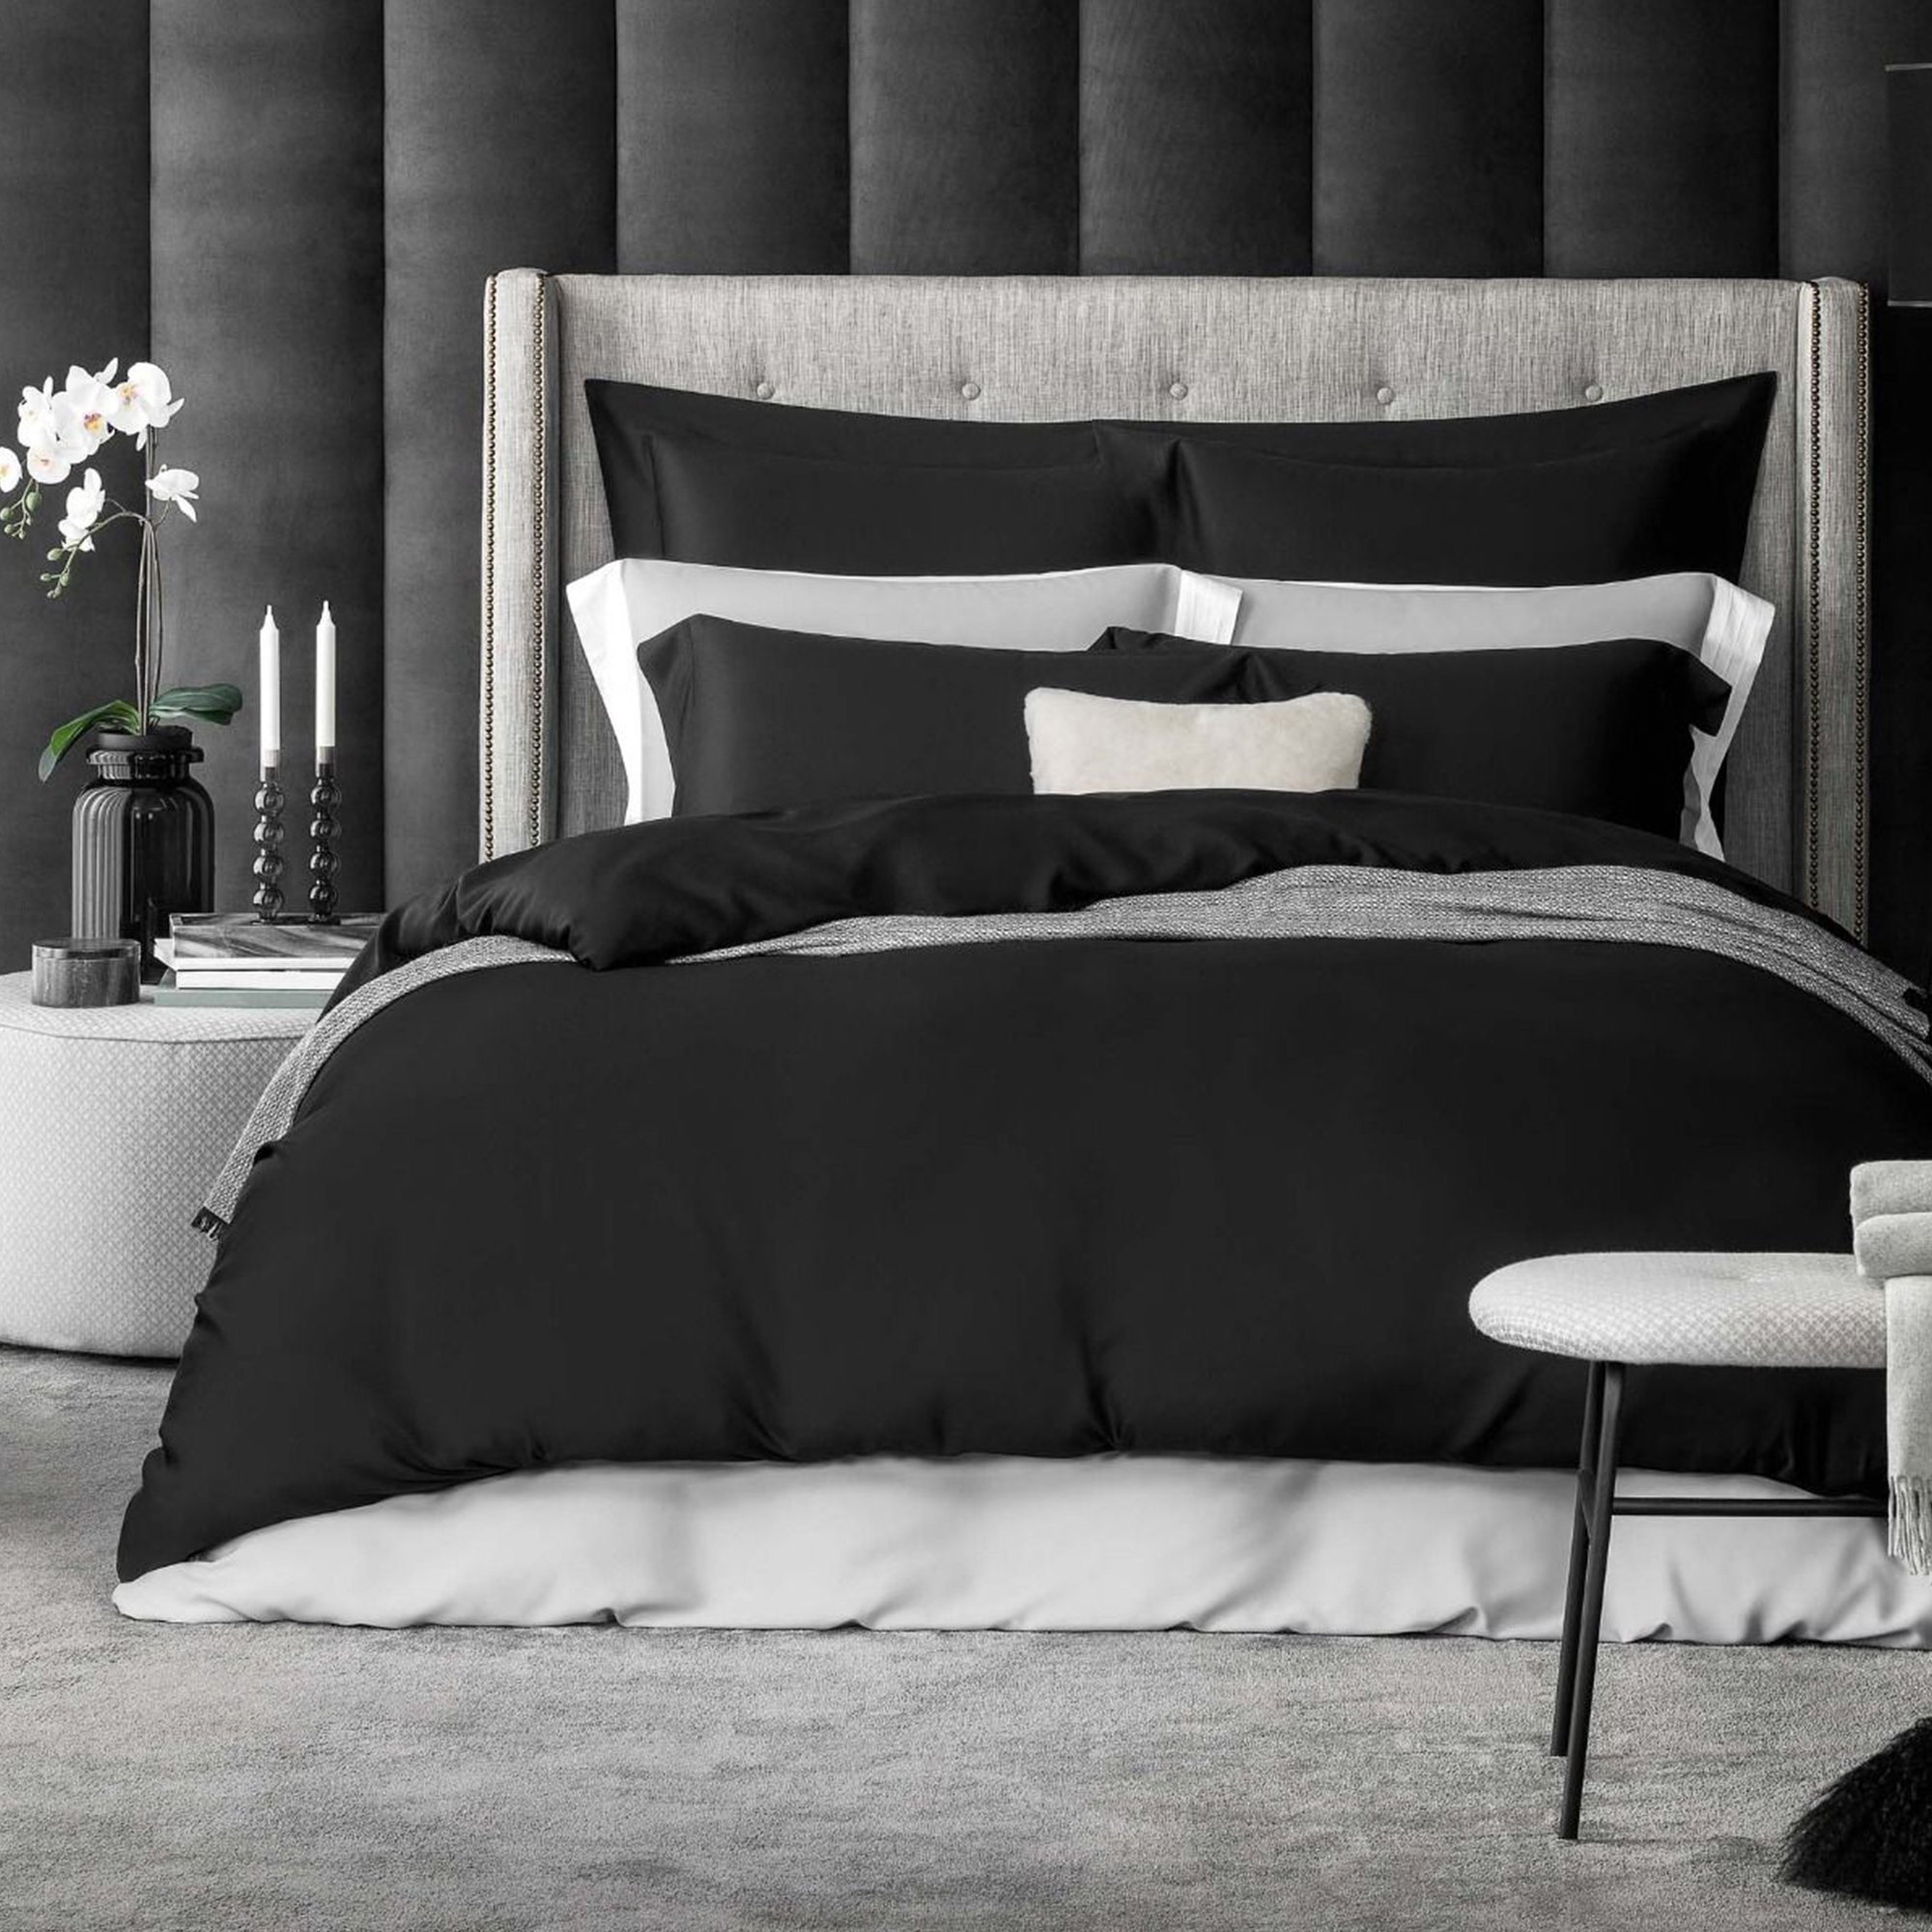 Комплект постельного белья Togas Сенса черный Полуторный комплект постельного белья la besse ранфорс чёрный полуторный